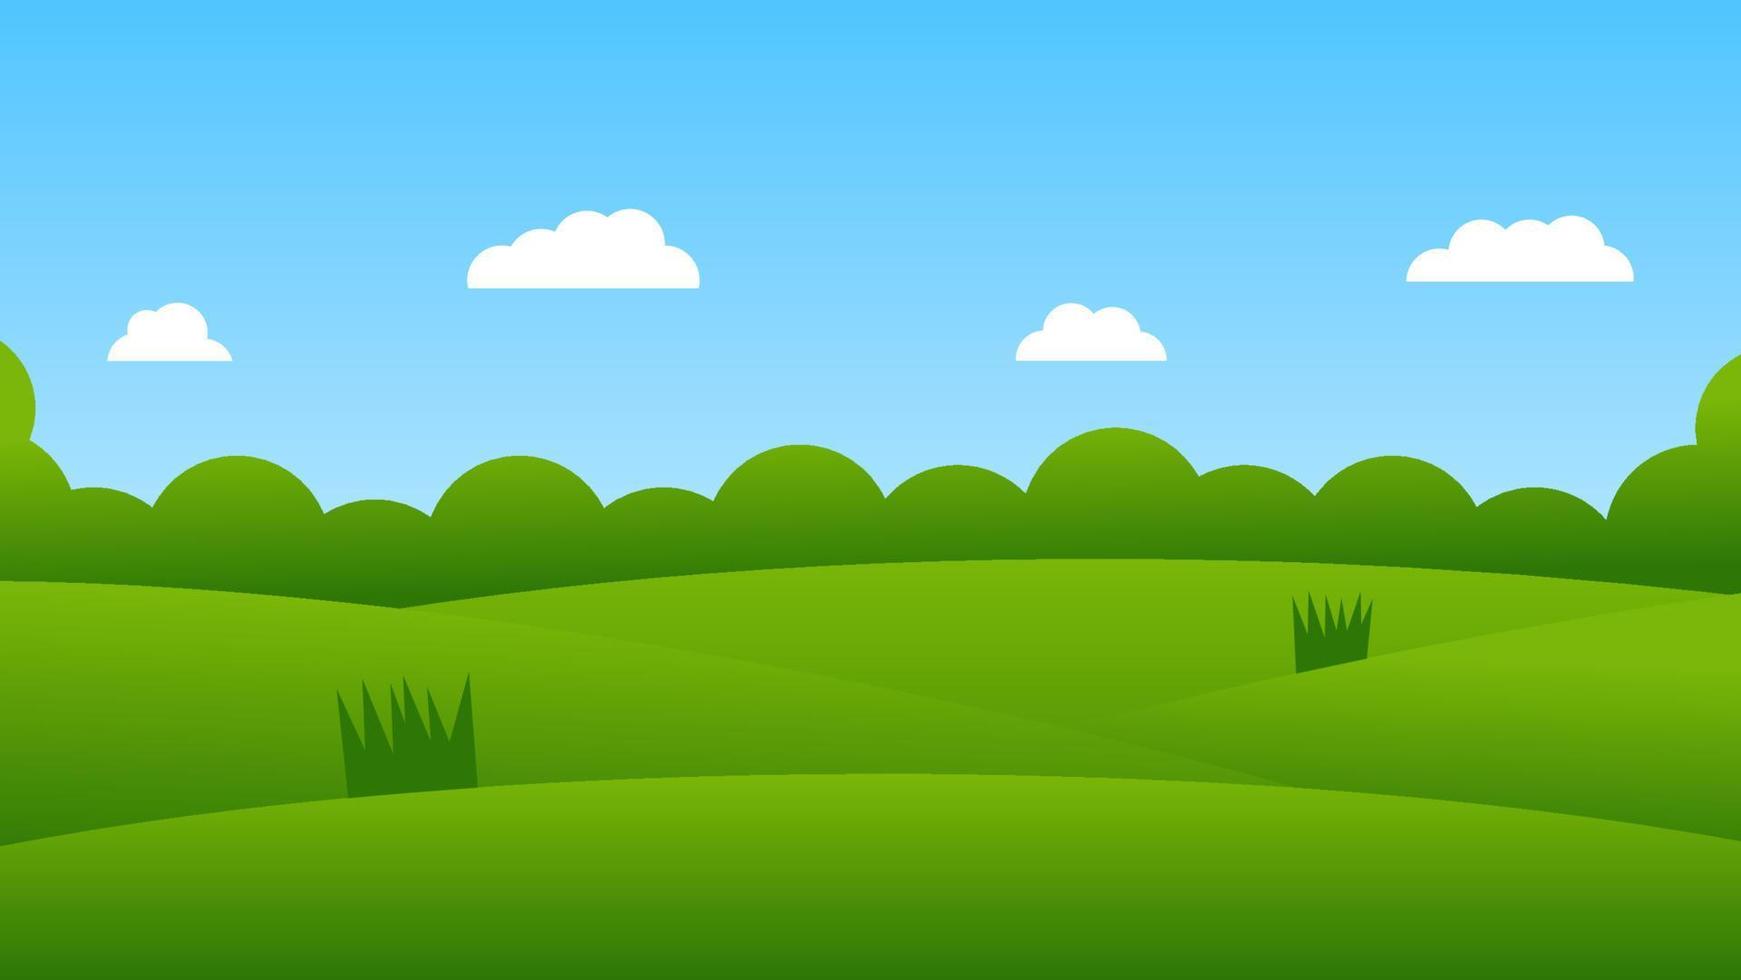 escena de dibujos animados de paisaje con colinas verdes y nubes blancas en  el fondo del cielo azul de verano 13789801 Vector en Vecteezy